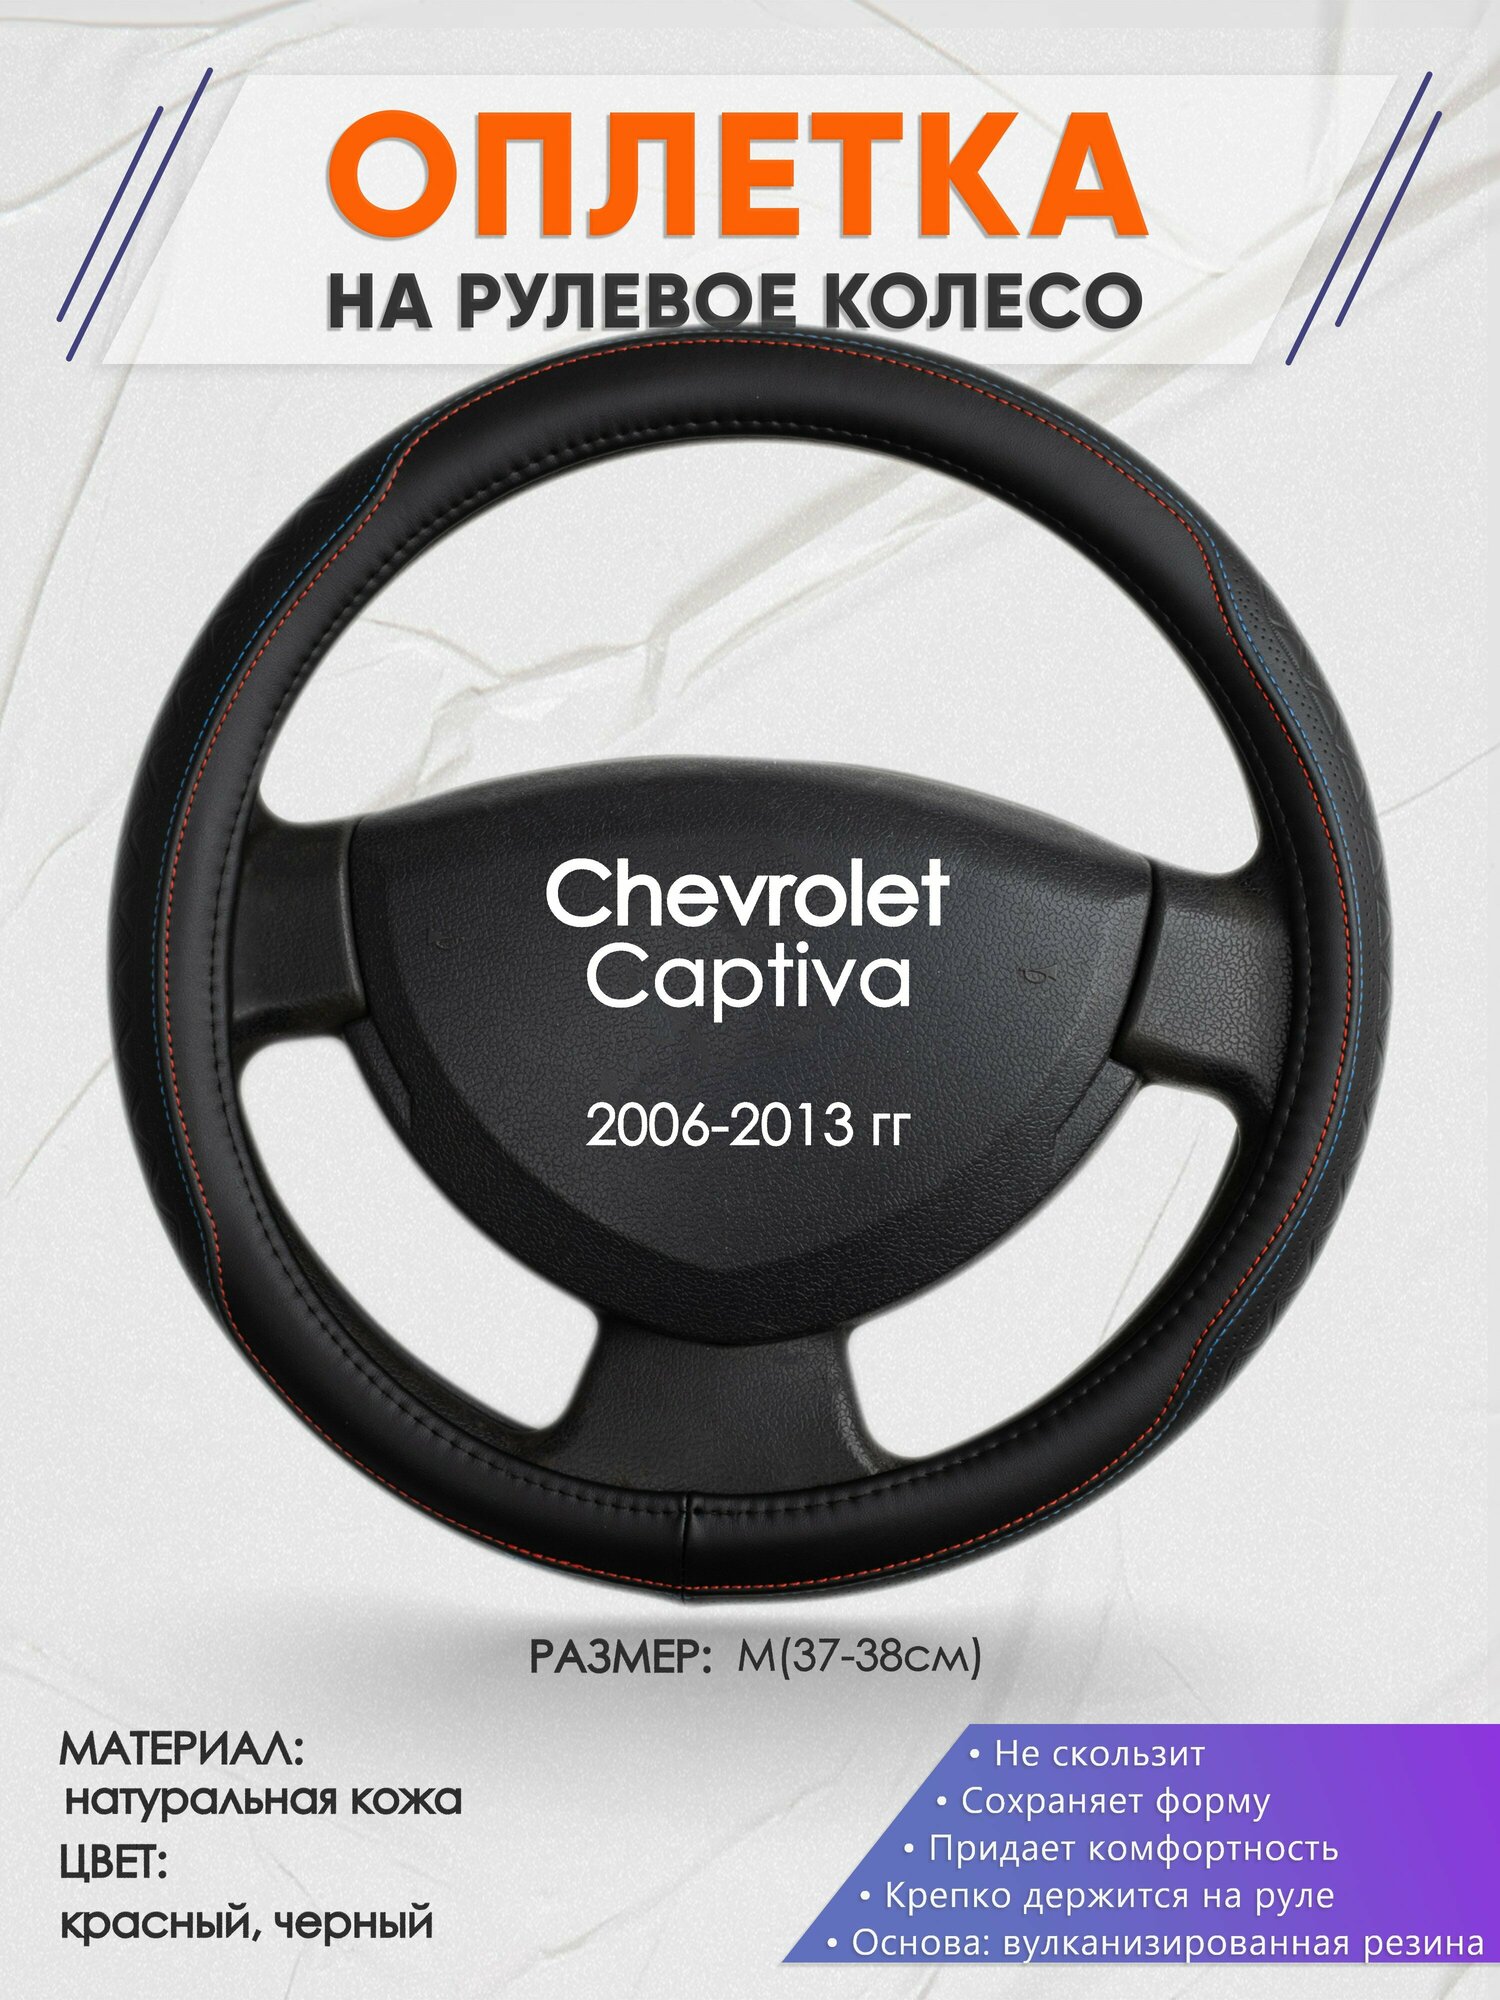 Оплетка на руль для Chevrolet Captiva (Шевроле Каптива) 2006-2013, M(37-38см), Натуральная кожа 89